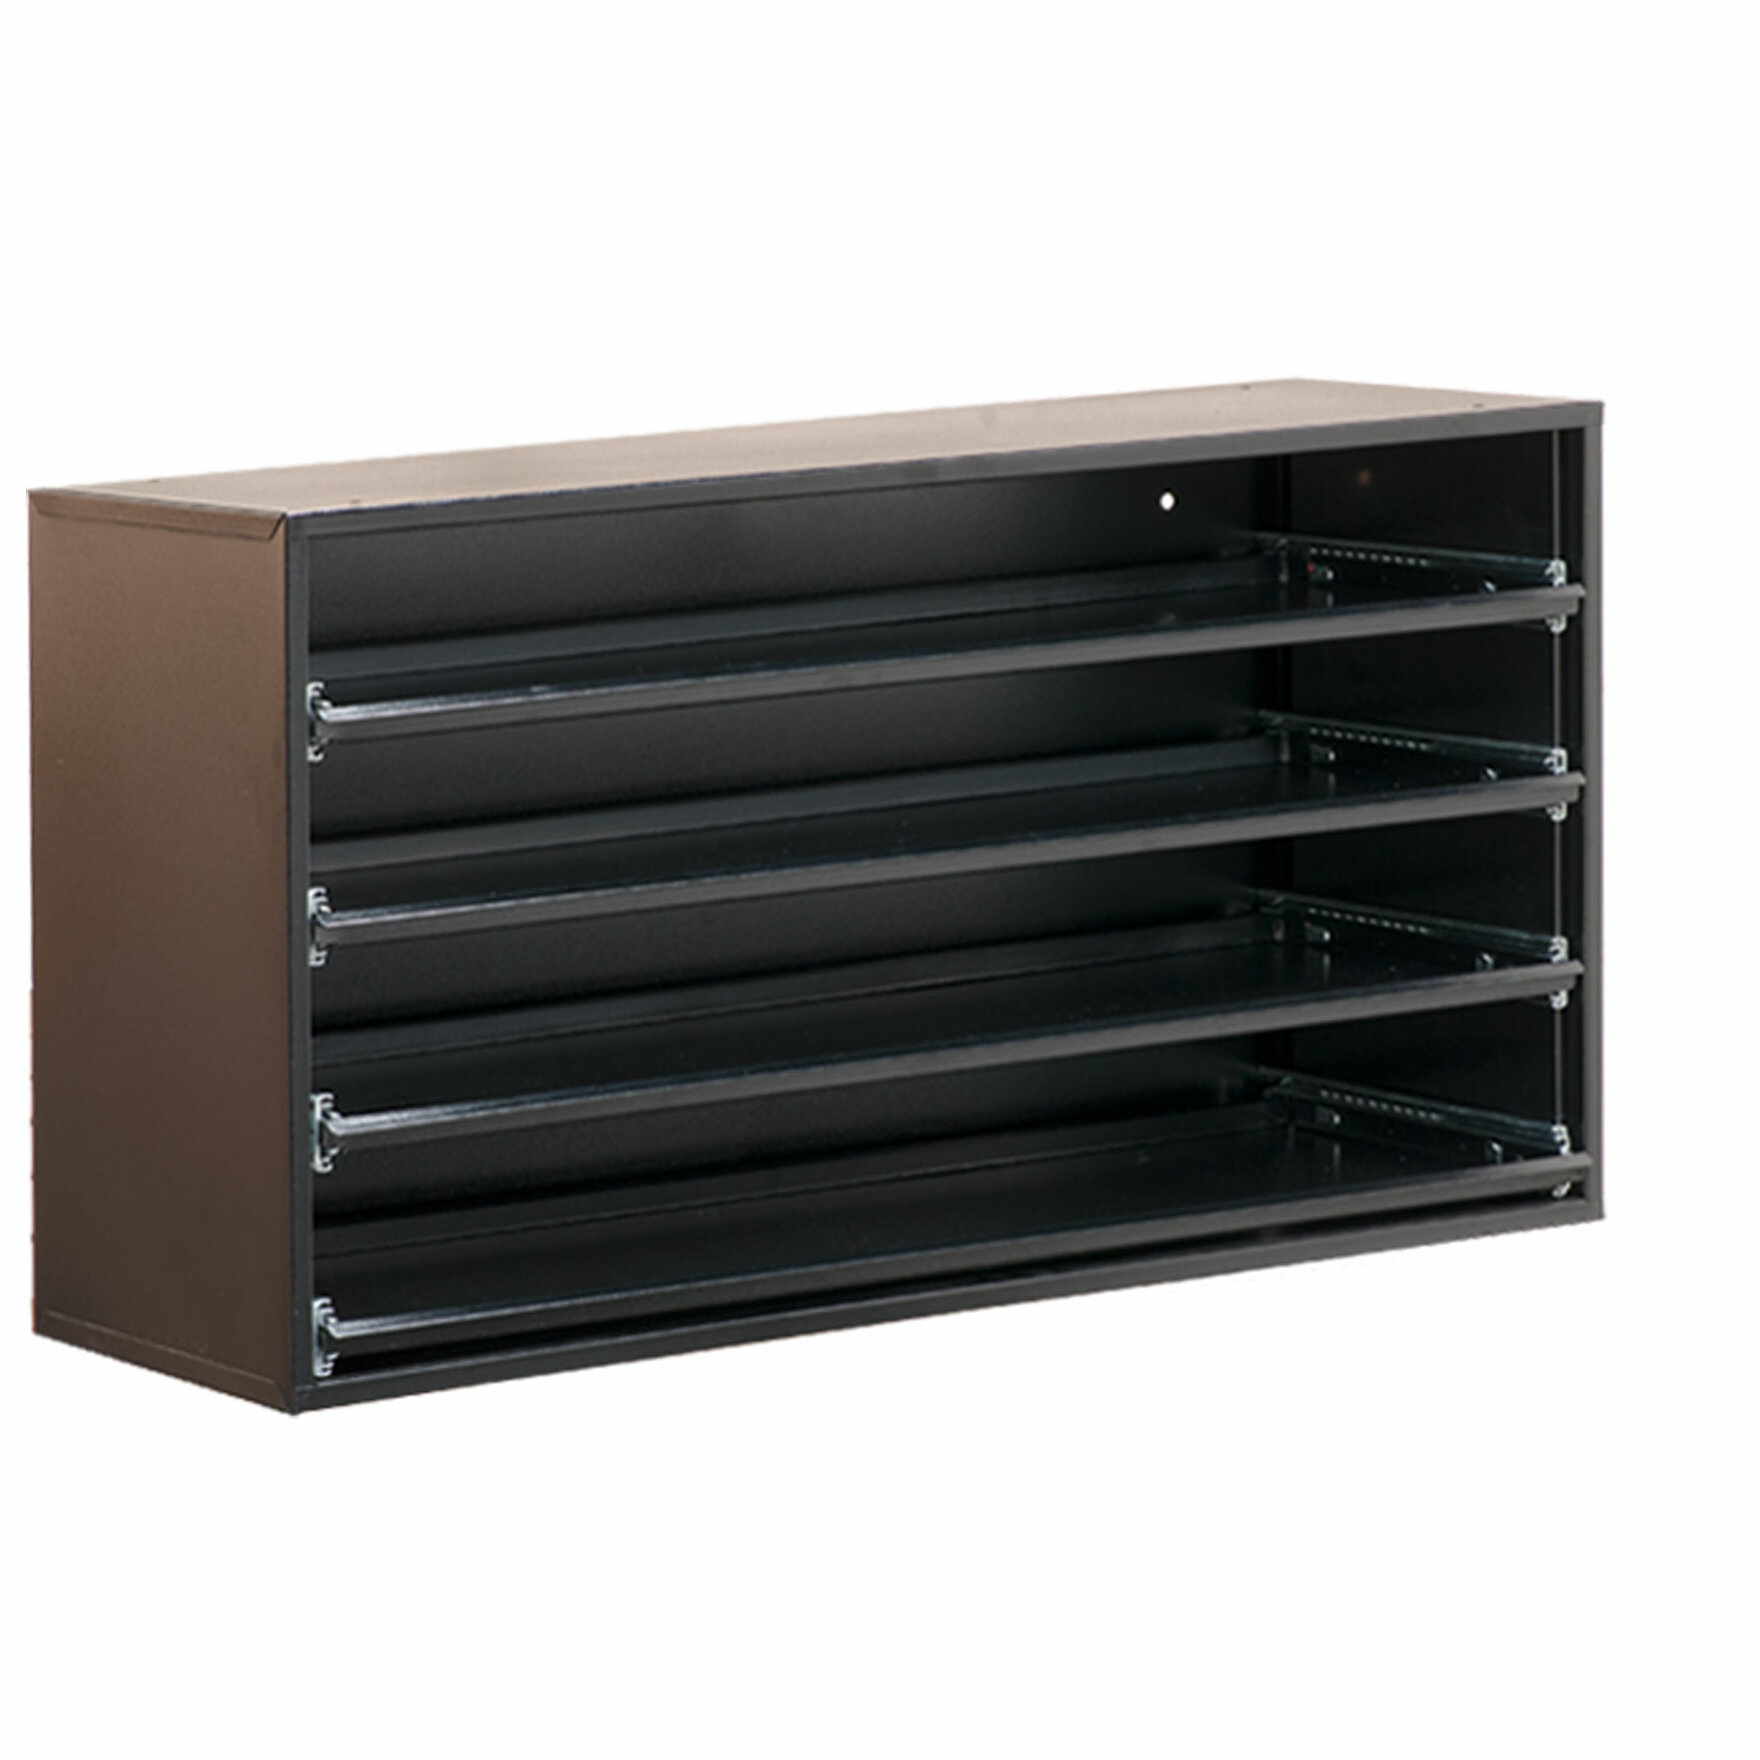 Wfx Utility 21 H X 41 13 W Sliding Shelf Cabinet Wayfair